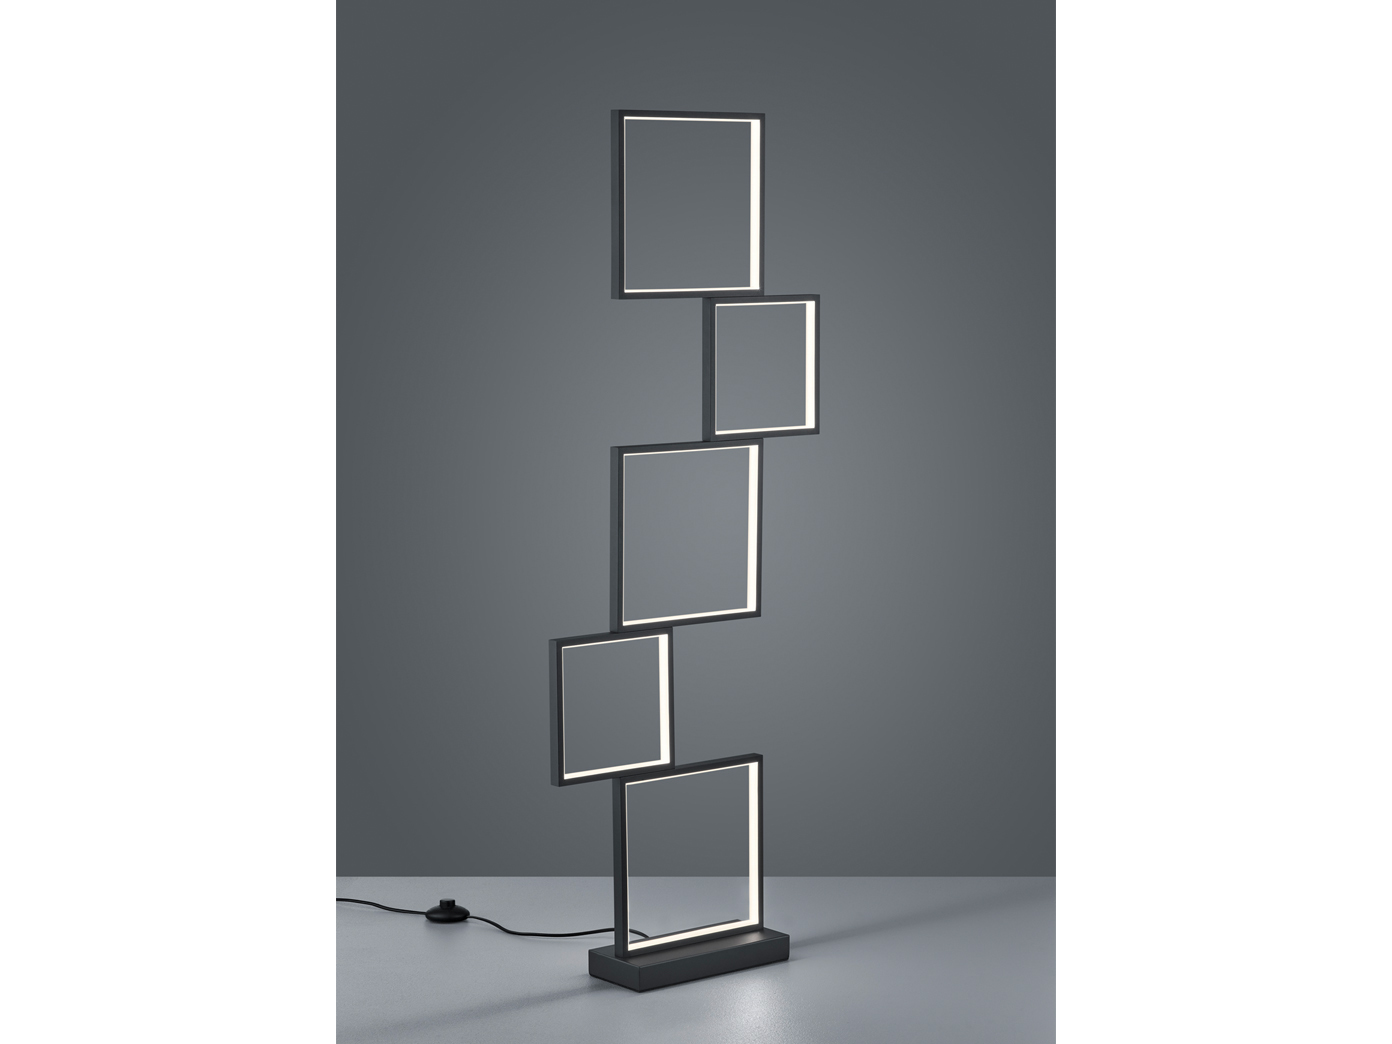 Trio LED Deckenlampe Sorrento Deckenleuchte 52 2x52 2x16cm schwarz online  kaufen | eBay